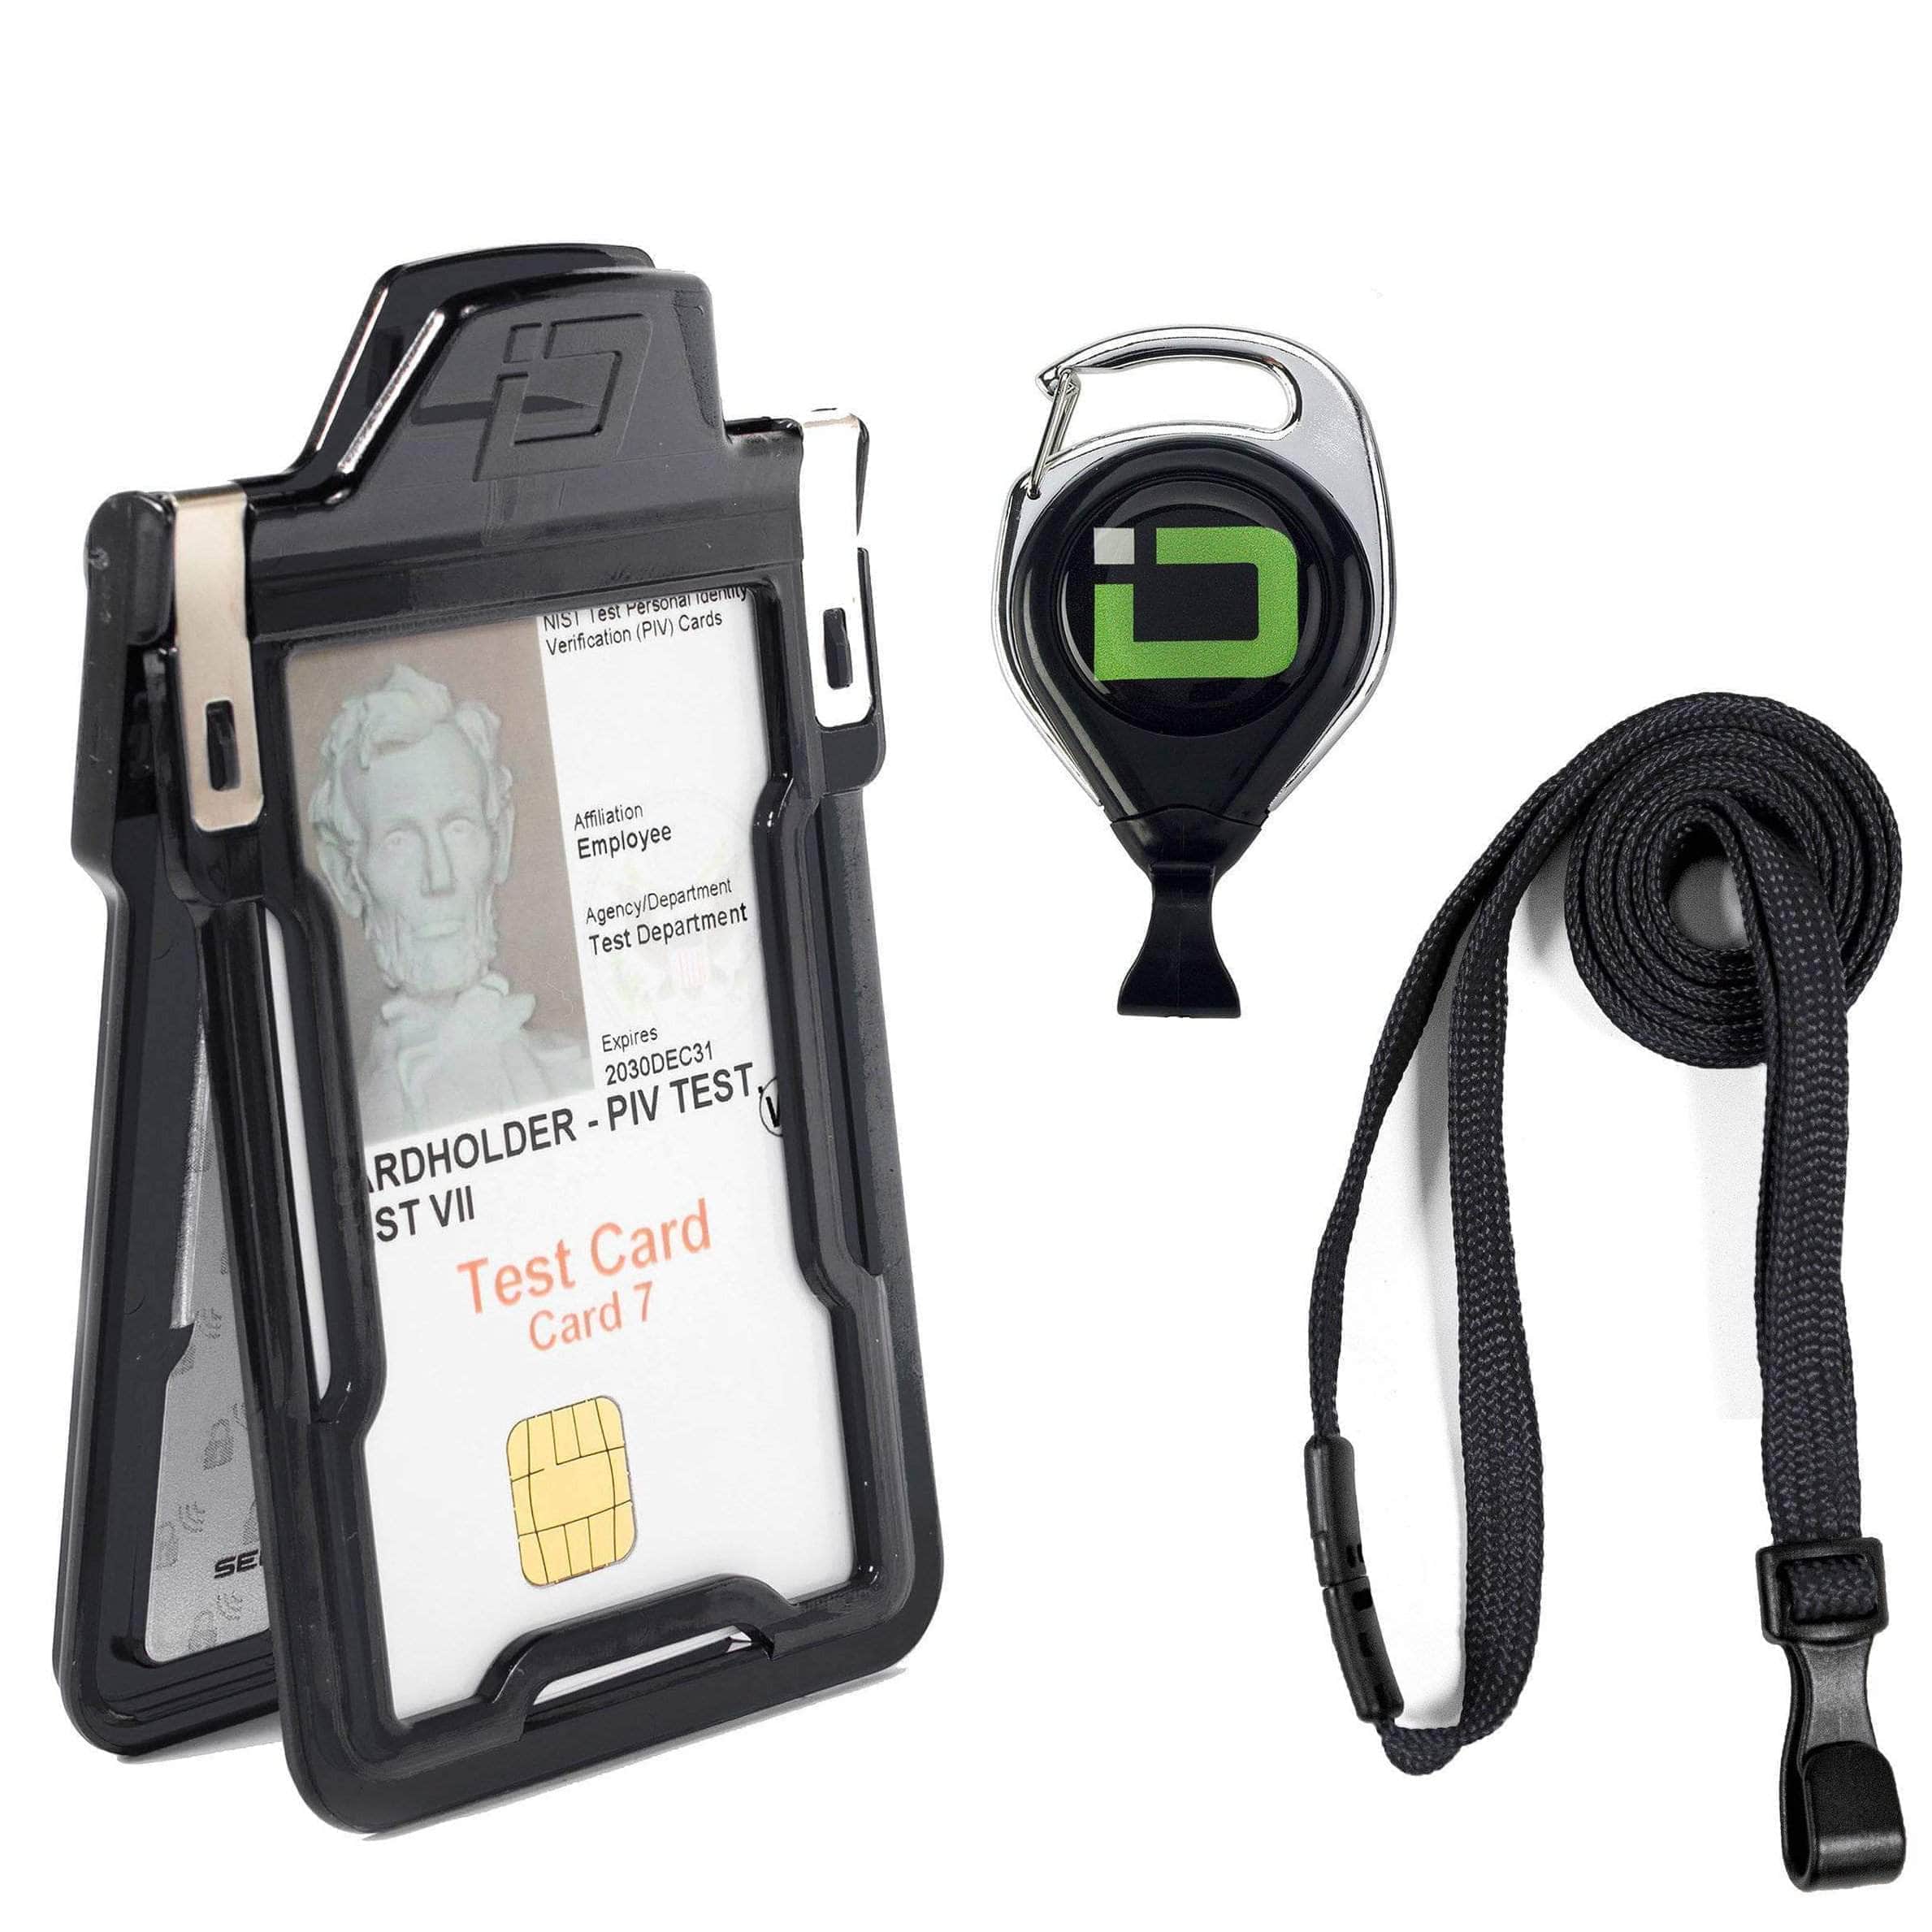 ID Stronghold Badgeholder Black Secure Badge Holder Classic, Vertical 1 Card Holder, Retractable Reel, and Lanyard Bundle